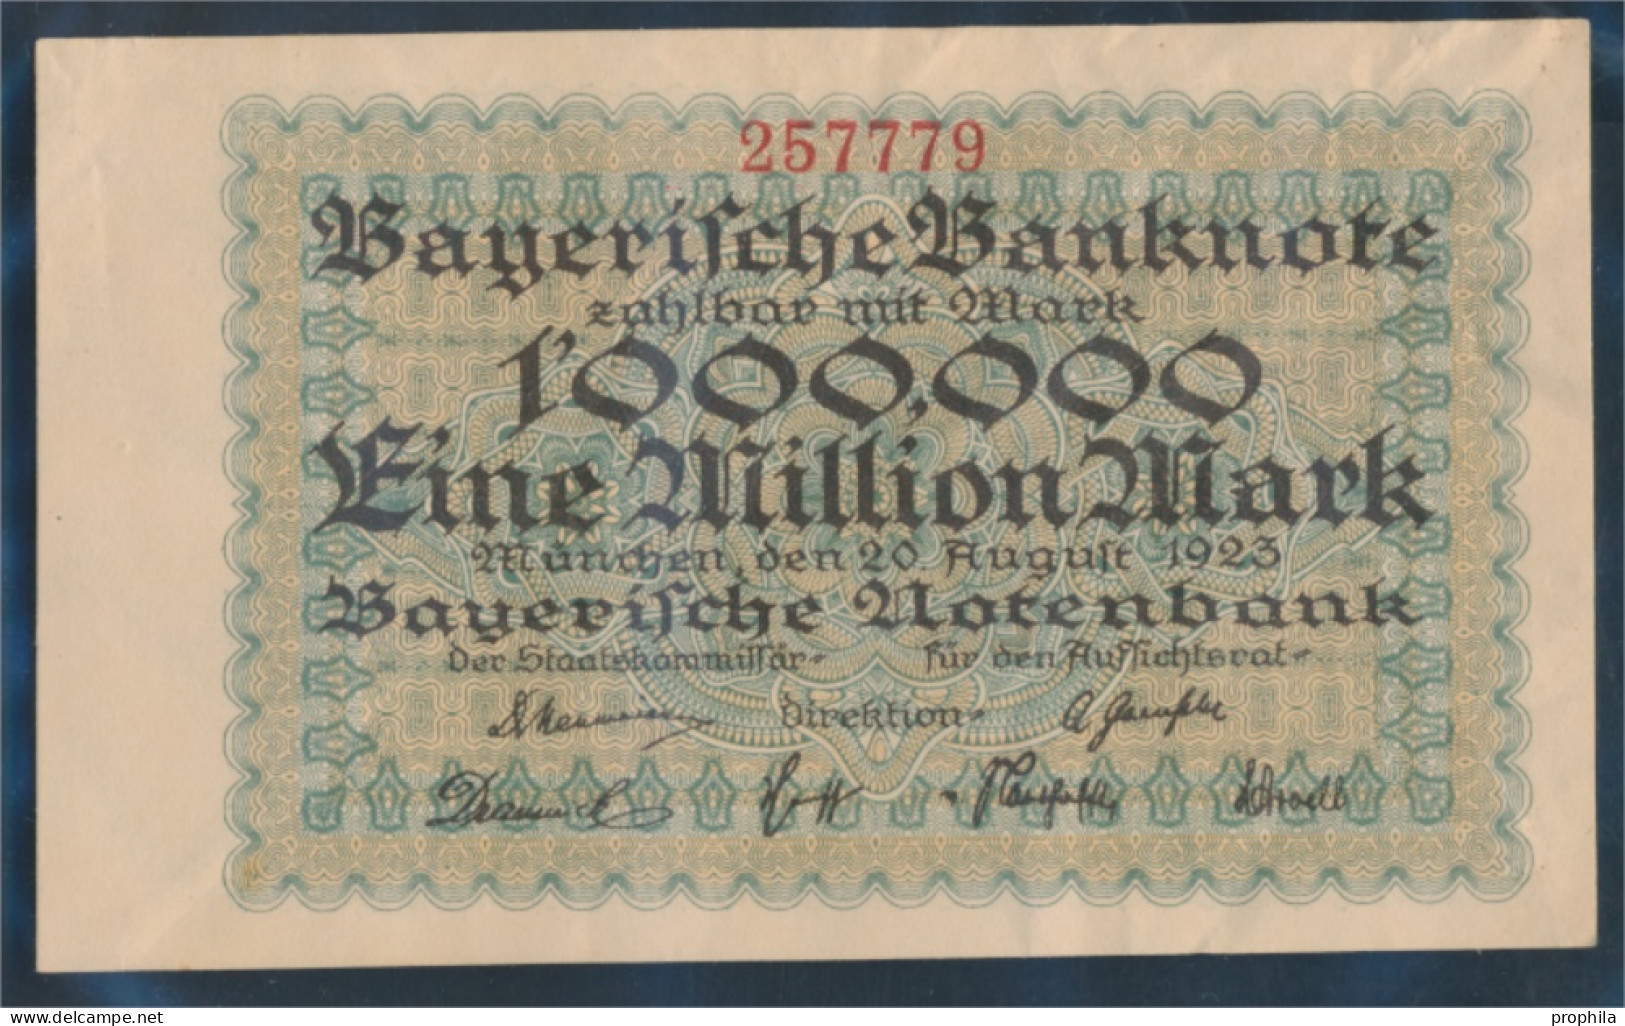 Bayern Rosenbg: BAY12 Länderbanknote Bayern Gebraucht (III) 1923 1 Million Mark (10288411 - 1 Mio. Mark